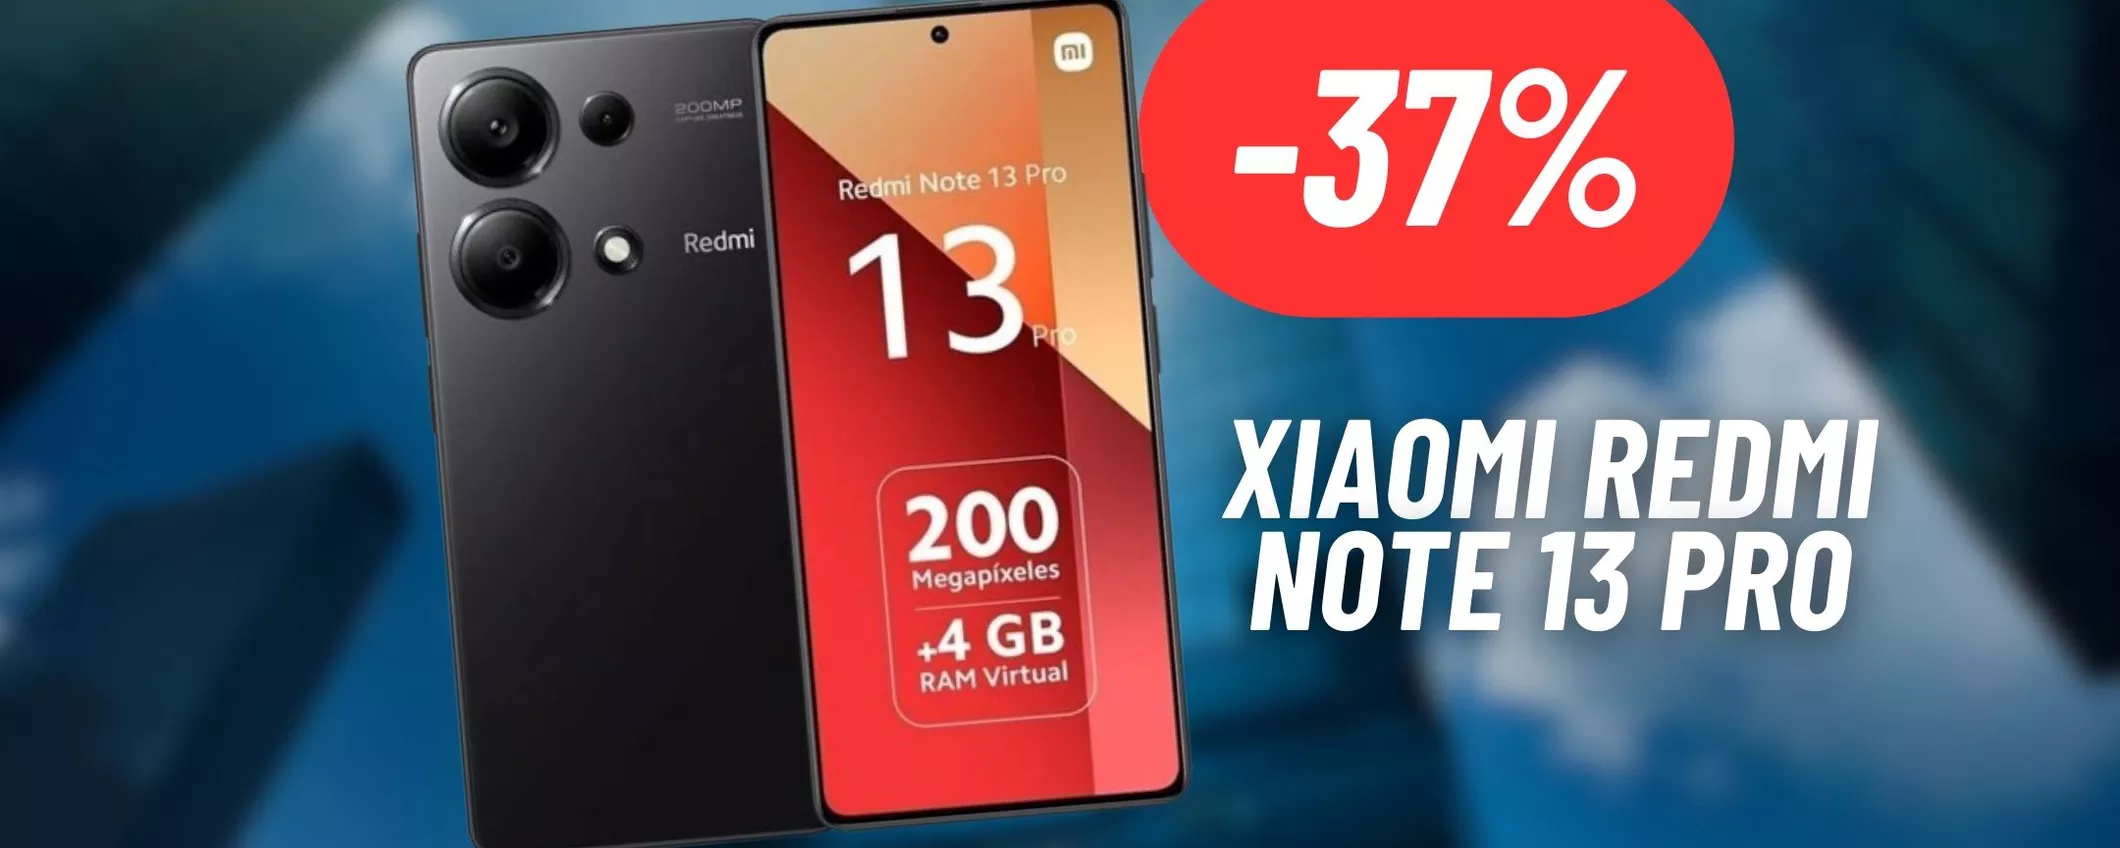 CROLLA IL PREZZO dello Xiaomi Redmi Note 13 Pro: 37% di sconto attivo